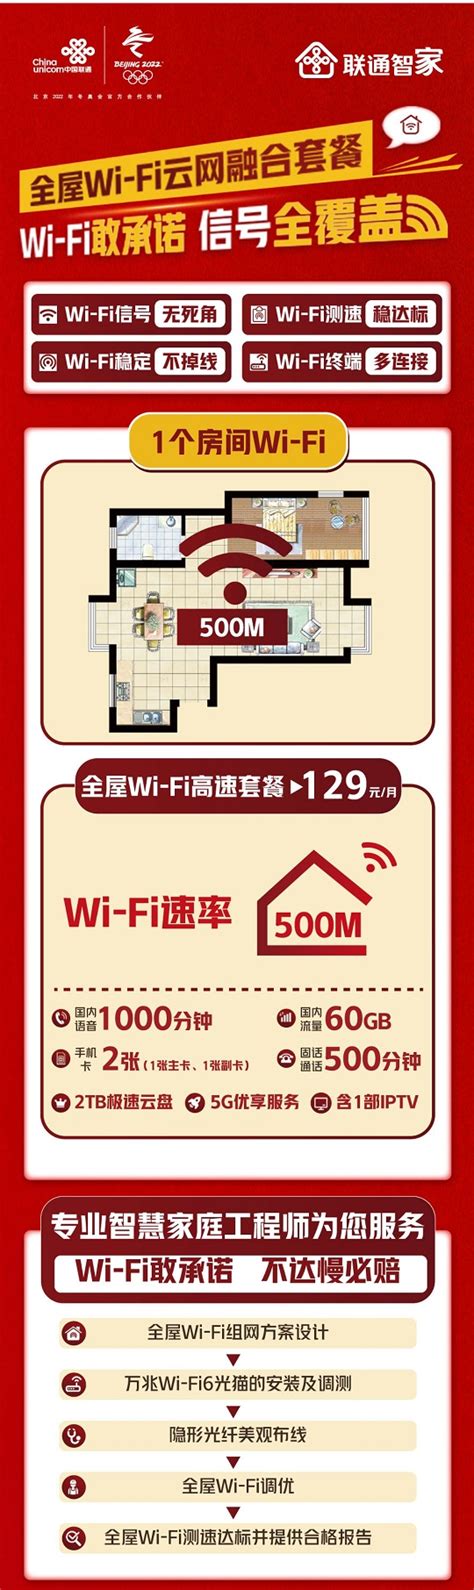 天津联通全屋WIFI智网129元500M宽带套餐